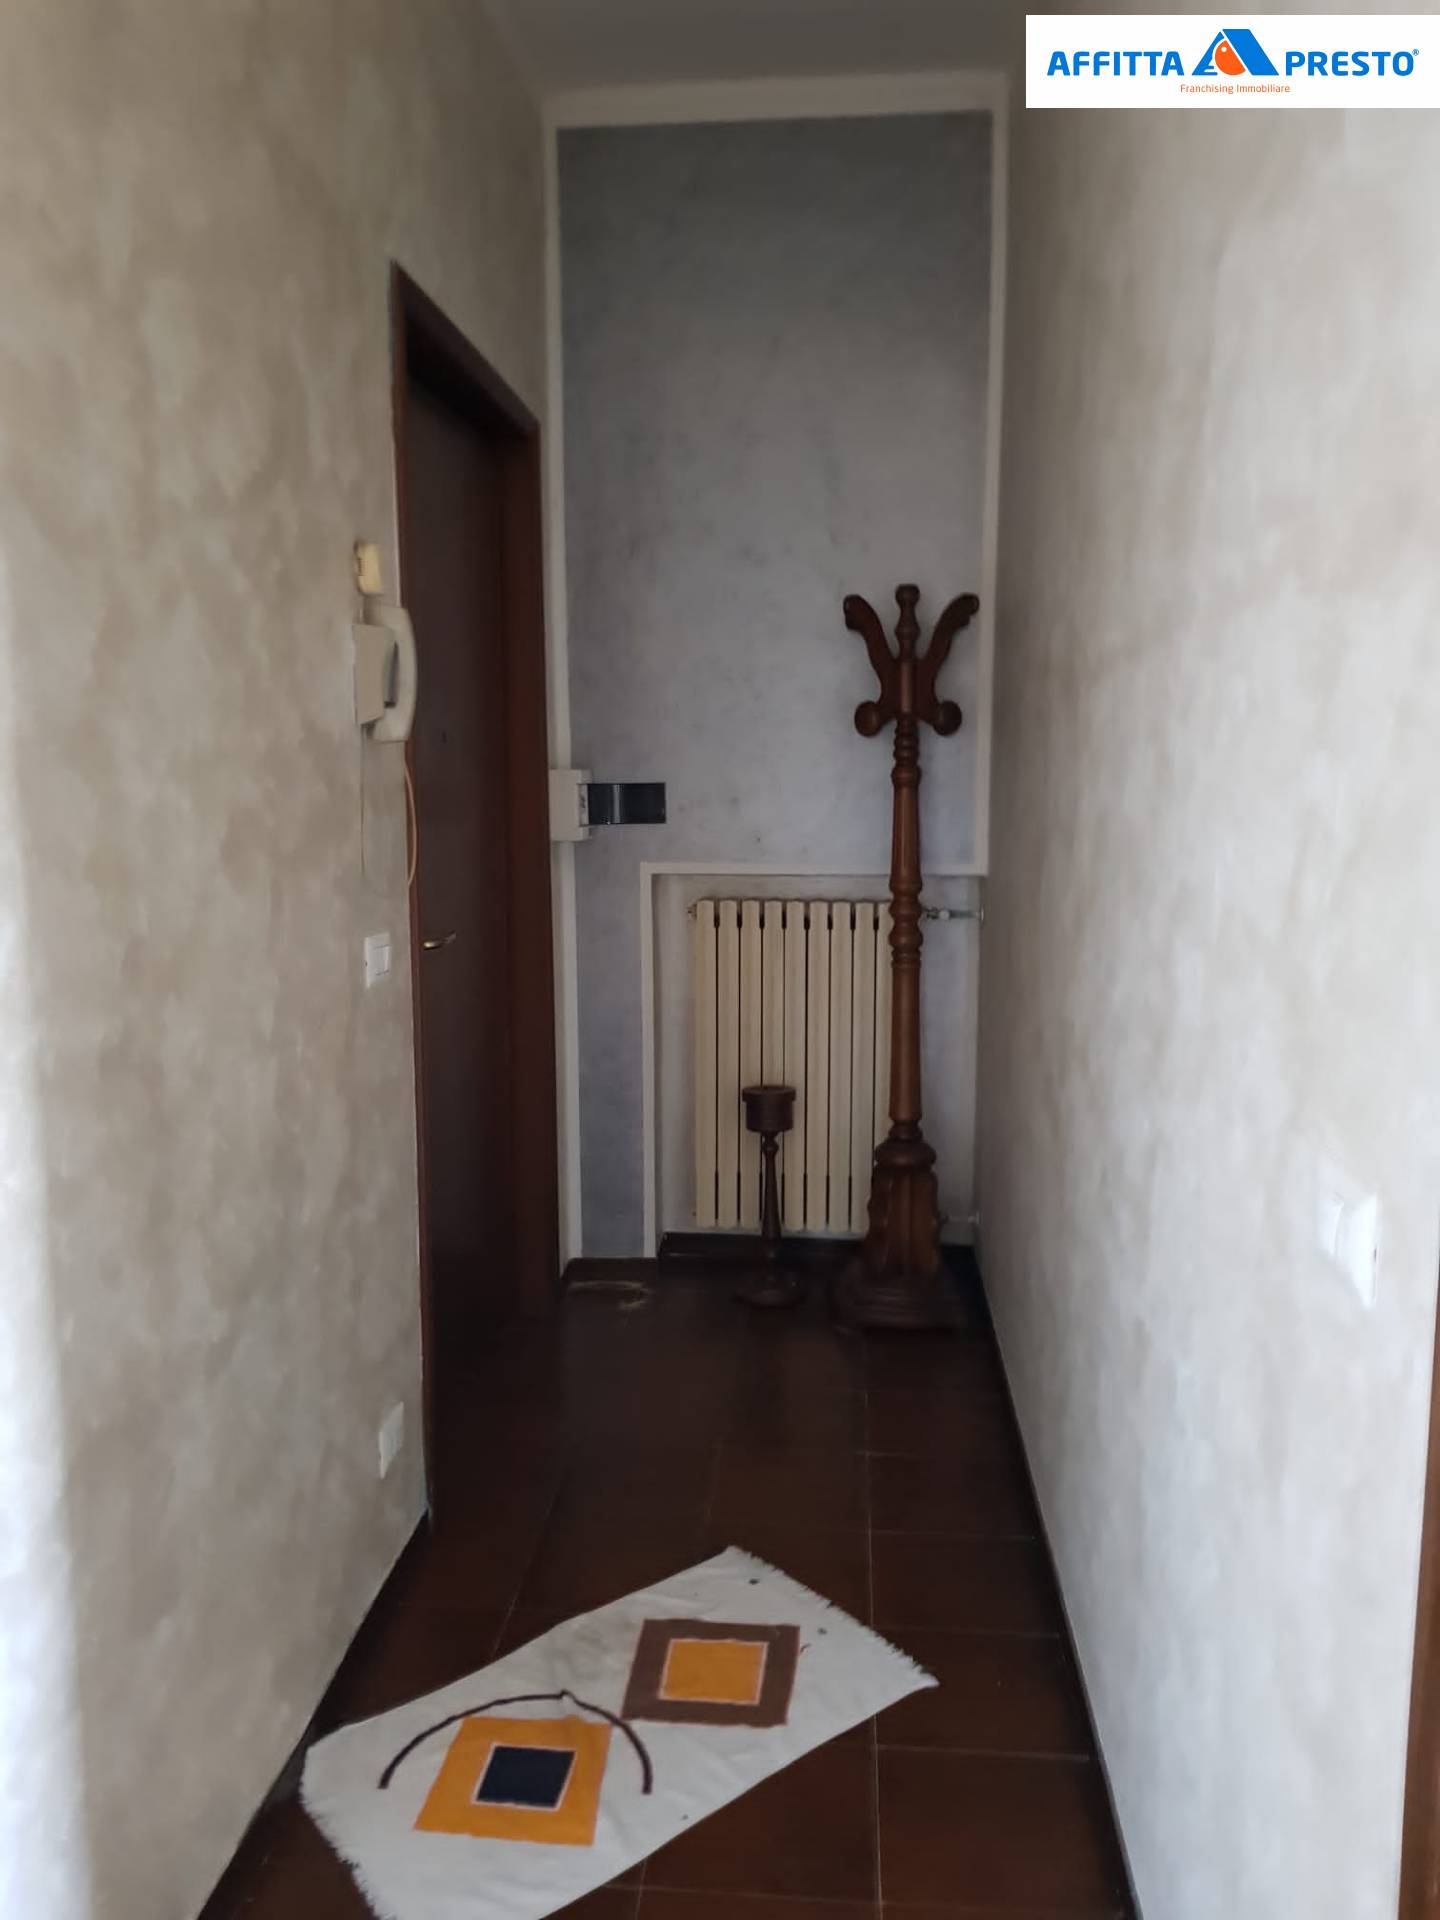 Appartamento in affitto a Fornovo di Taro, 3 locali, zona Località: Ricc?, prezzo € 1.000 | PortaleAgenzieImmobiliari.it